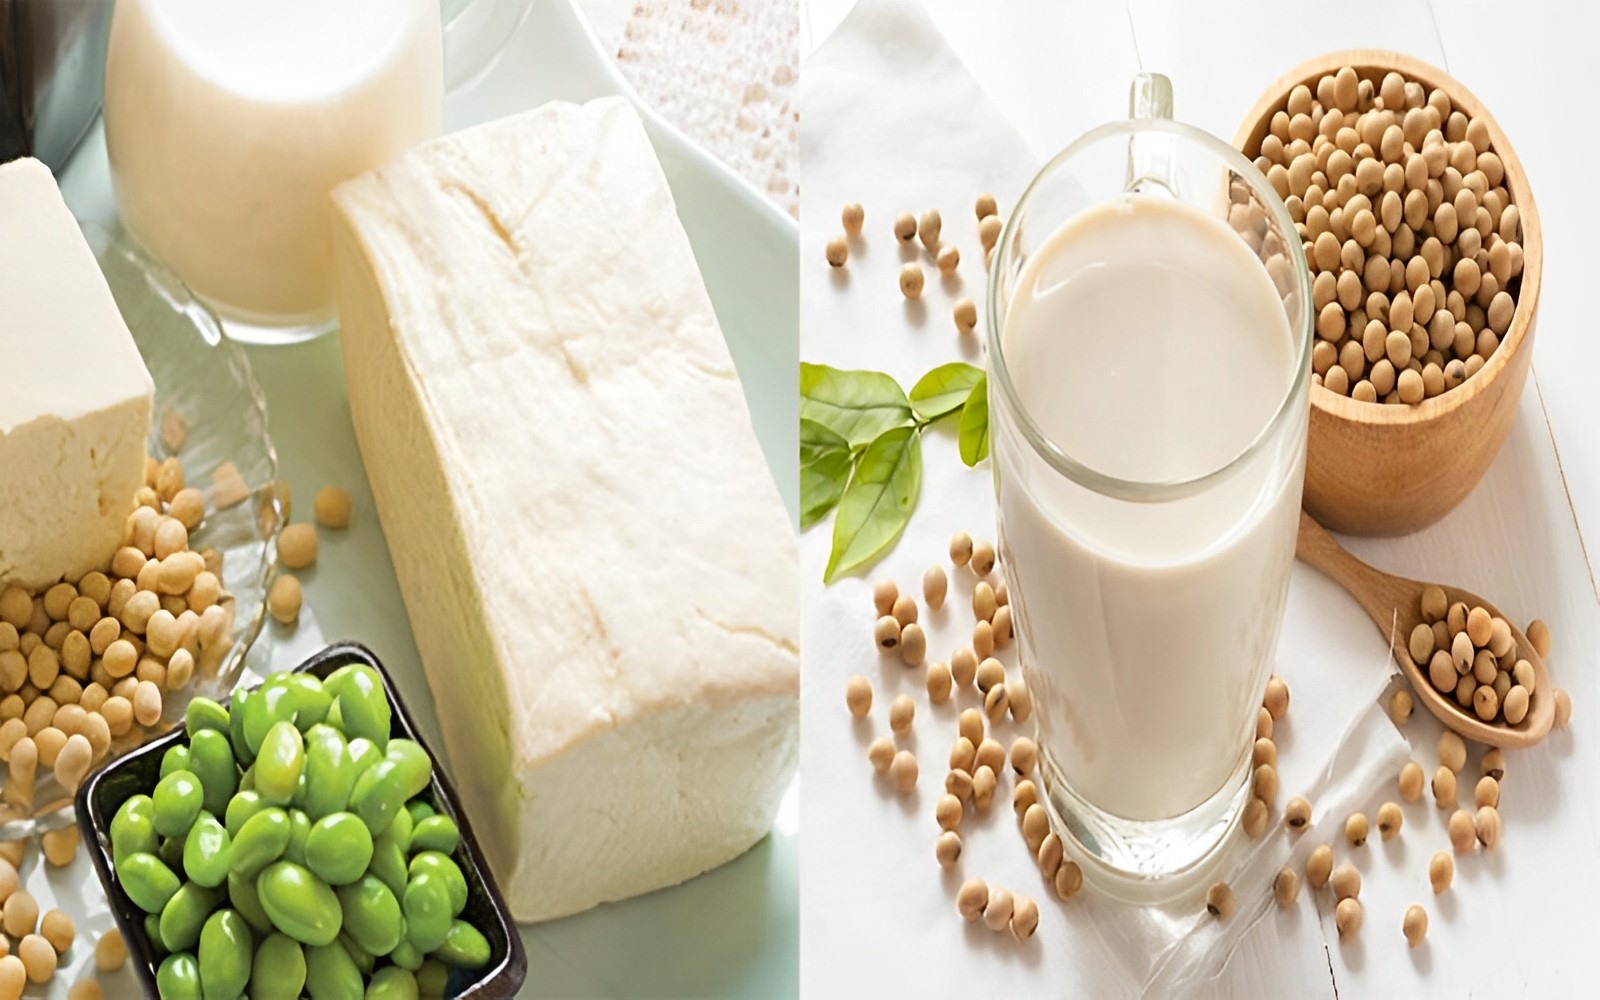 Đậu nành: Sữa đậu nành chứa hàm lượng vitamin E dồi dào, có khả năng thúc đẩy sự hình thành của tế bào mới. Đồng thời, nó còn bổ sung độ ẩm cho da, giúp da luôn mềm mại. Đặc biệt, trong sữa đậu nành còn có một lượng phytoestrogen giúp tăng sản xuất estrogen trong cơ thể. Từ đó, làm giảm sự xuất hiện của các nếp nhăn, nám và giúp da trắng sáng, mịn màng.